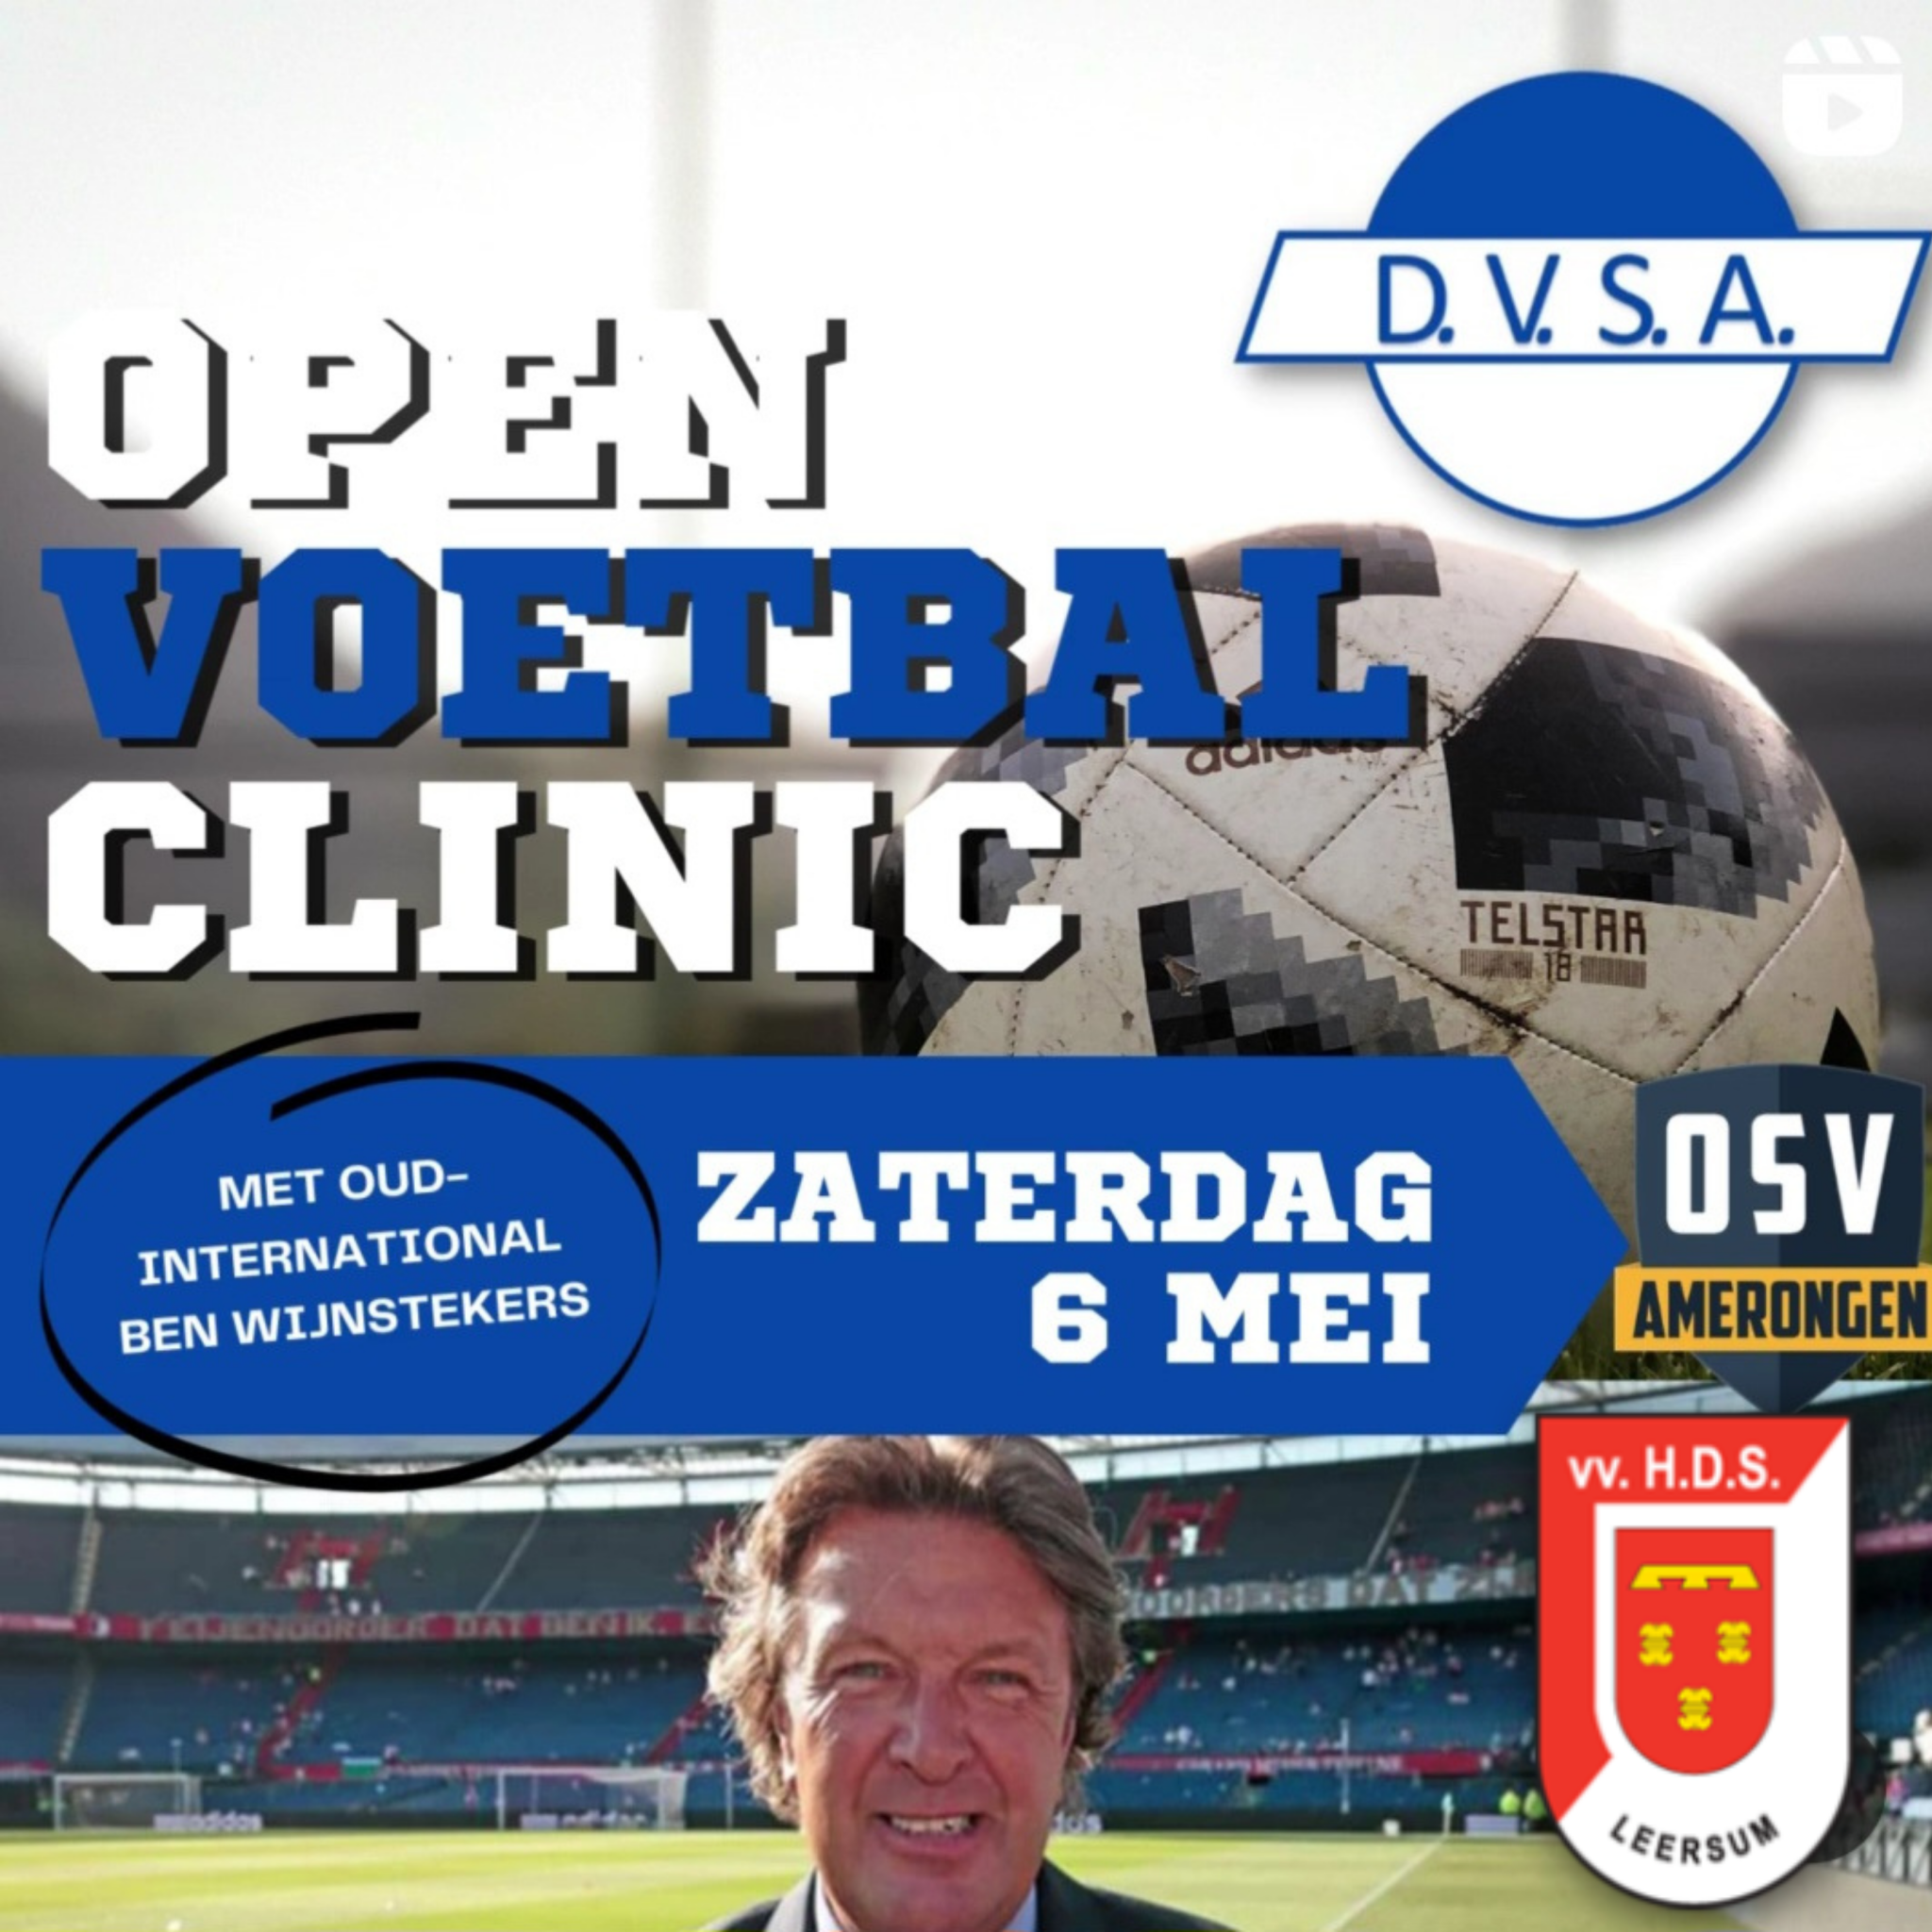 Zaterdag 6 mei – in samenwerking met HDS – een voetbal clinic in Amerongen (vanuit DVSA)